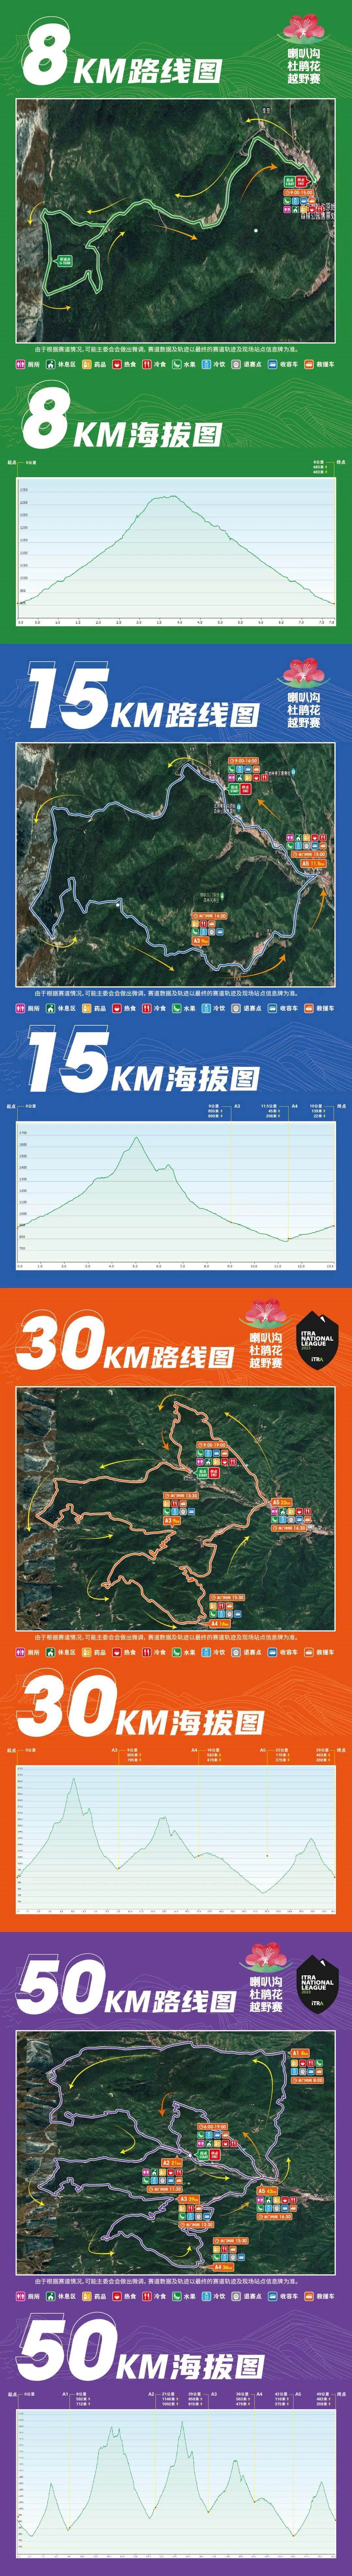 Ultra Race Beijing Labagou Azalea Routenkarte